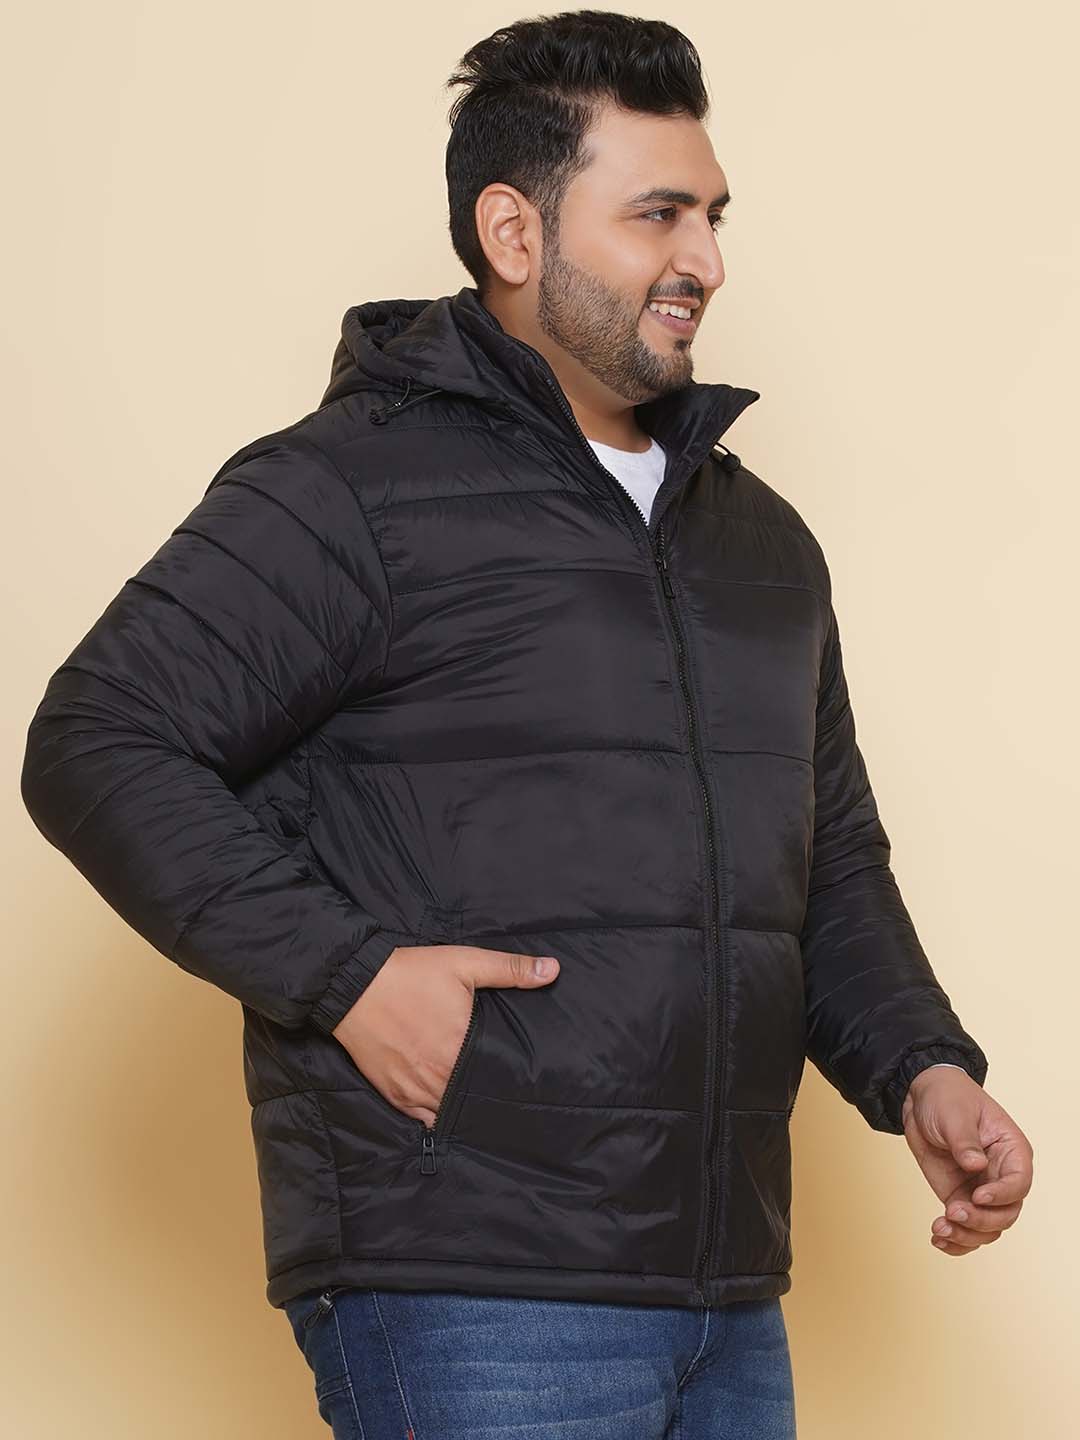 winterwear/jackets/JPJKT73084A/jpjkt73084a-3.jpg